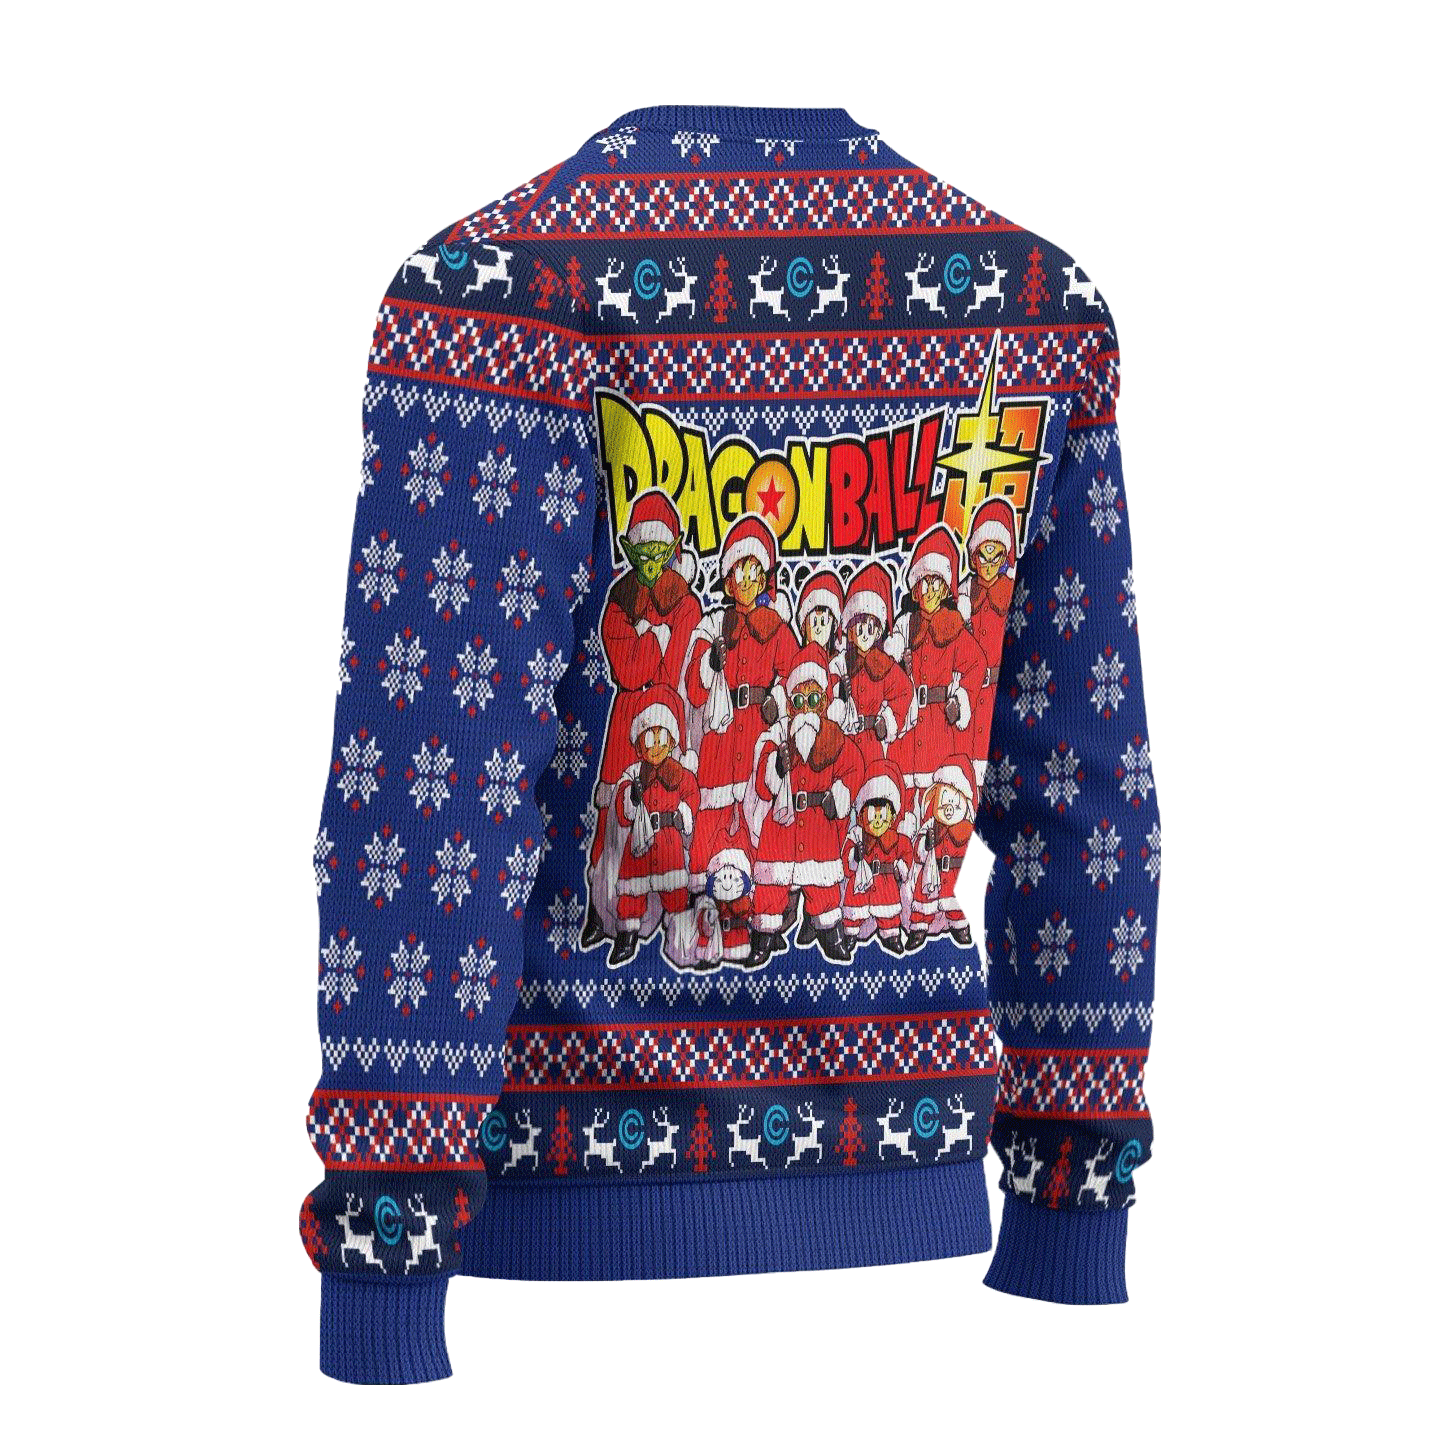 Capsule Corp Ugly Christmas Sweater Dragon Ball Anime Xmas Gift